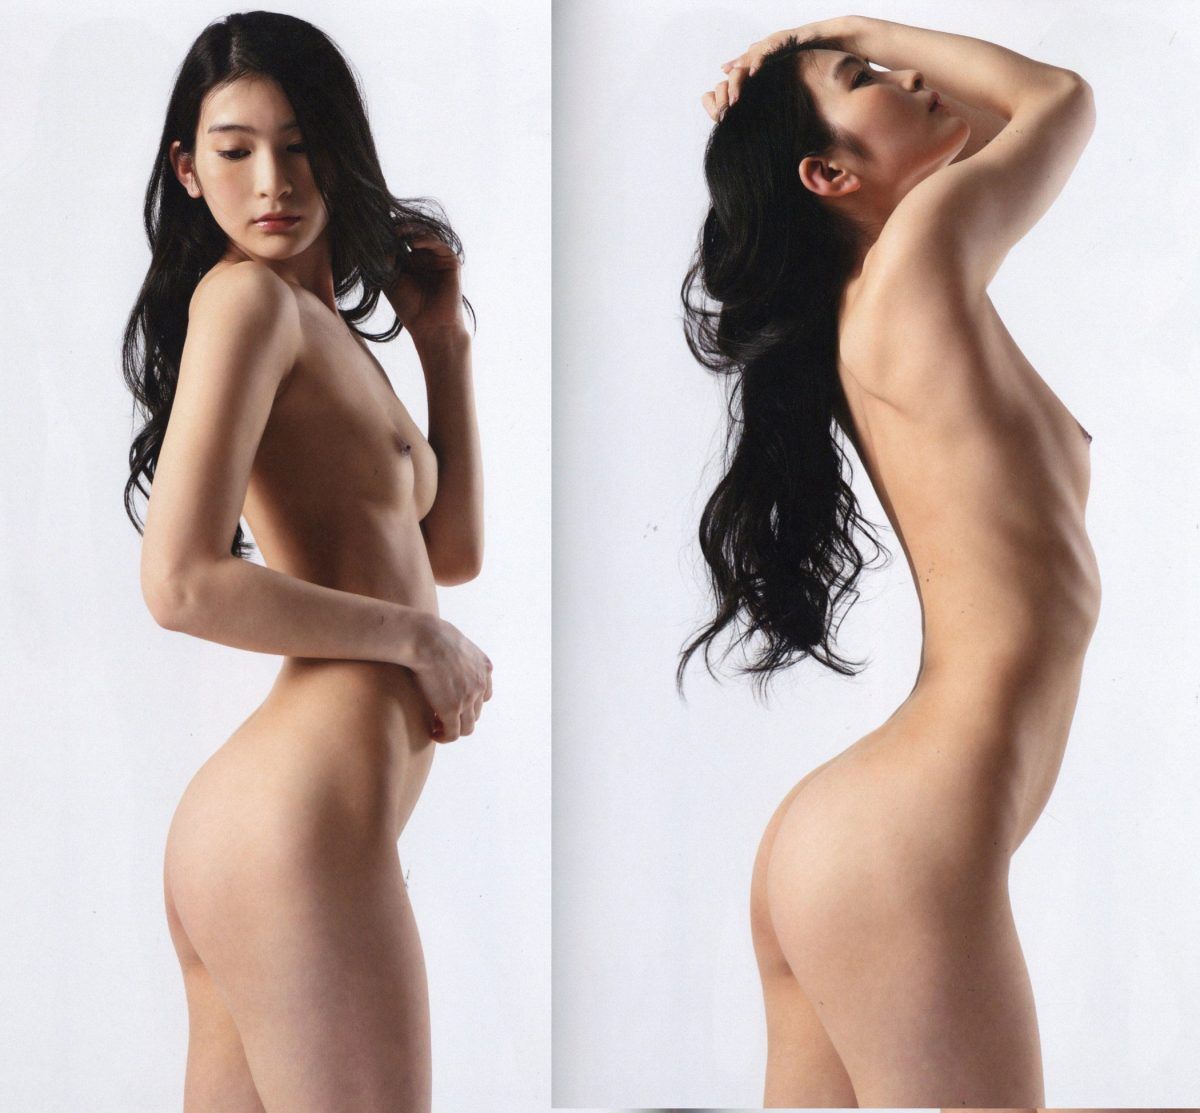 Suzu Honjo Side Poses Image